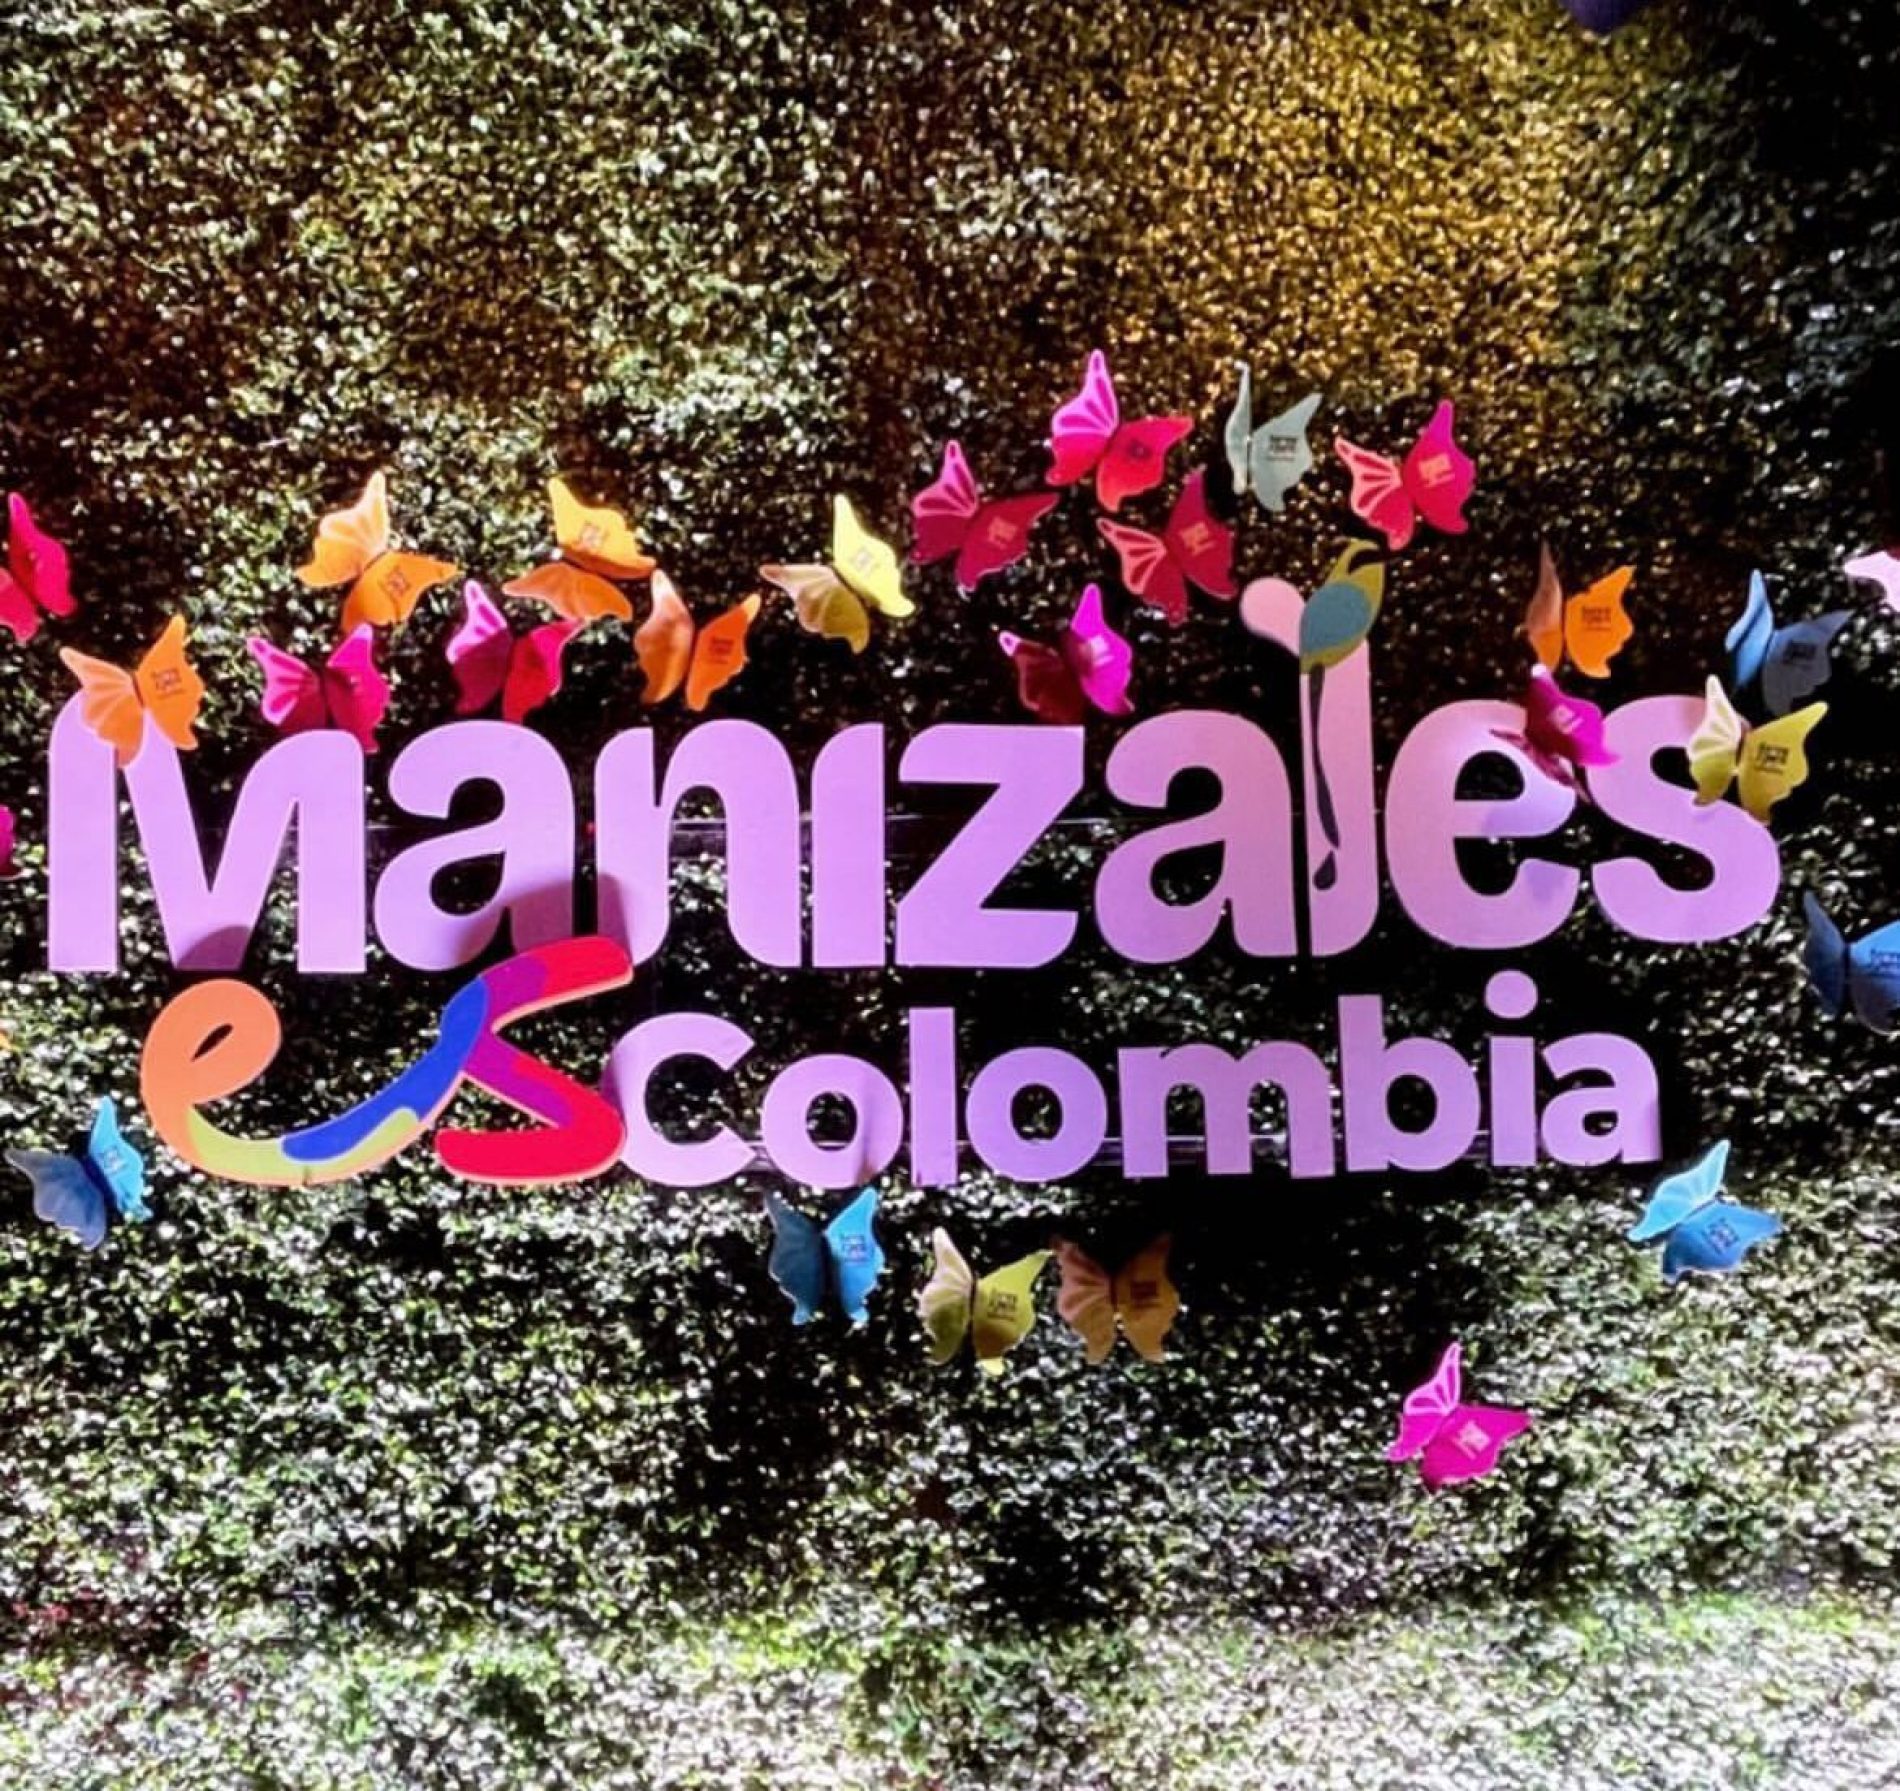 Manizales es Colombia, la marca ciudad con la que la capital de Caldas se posiciona como potencia turística